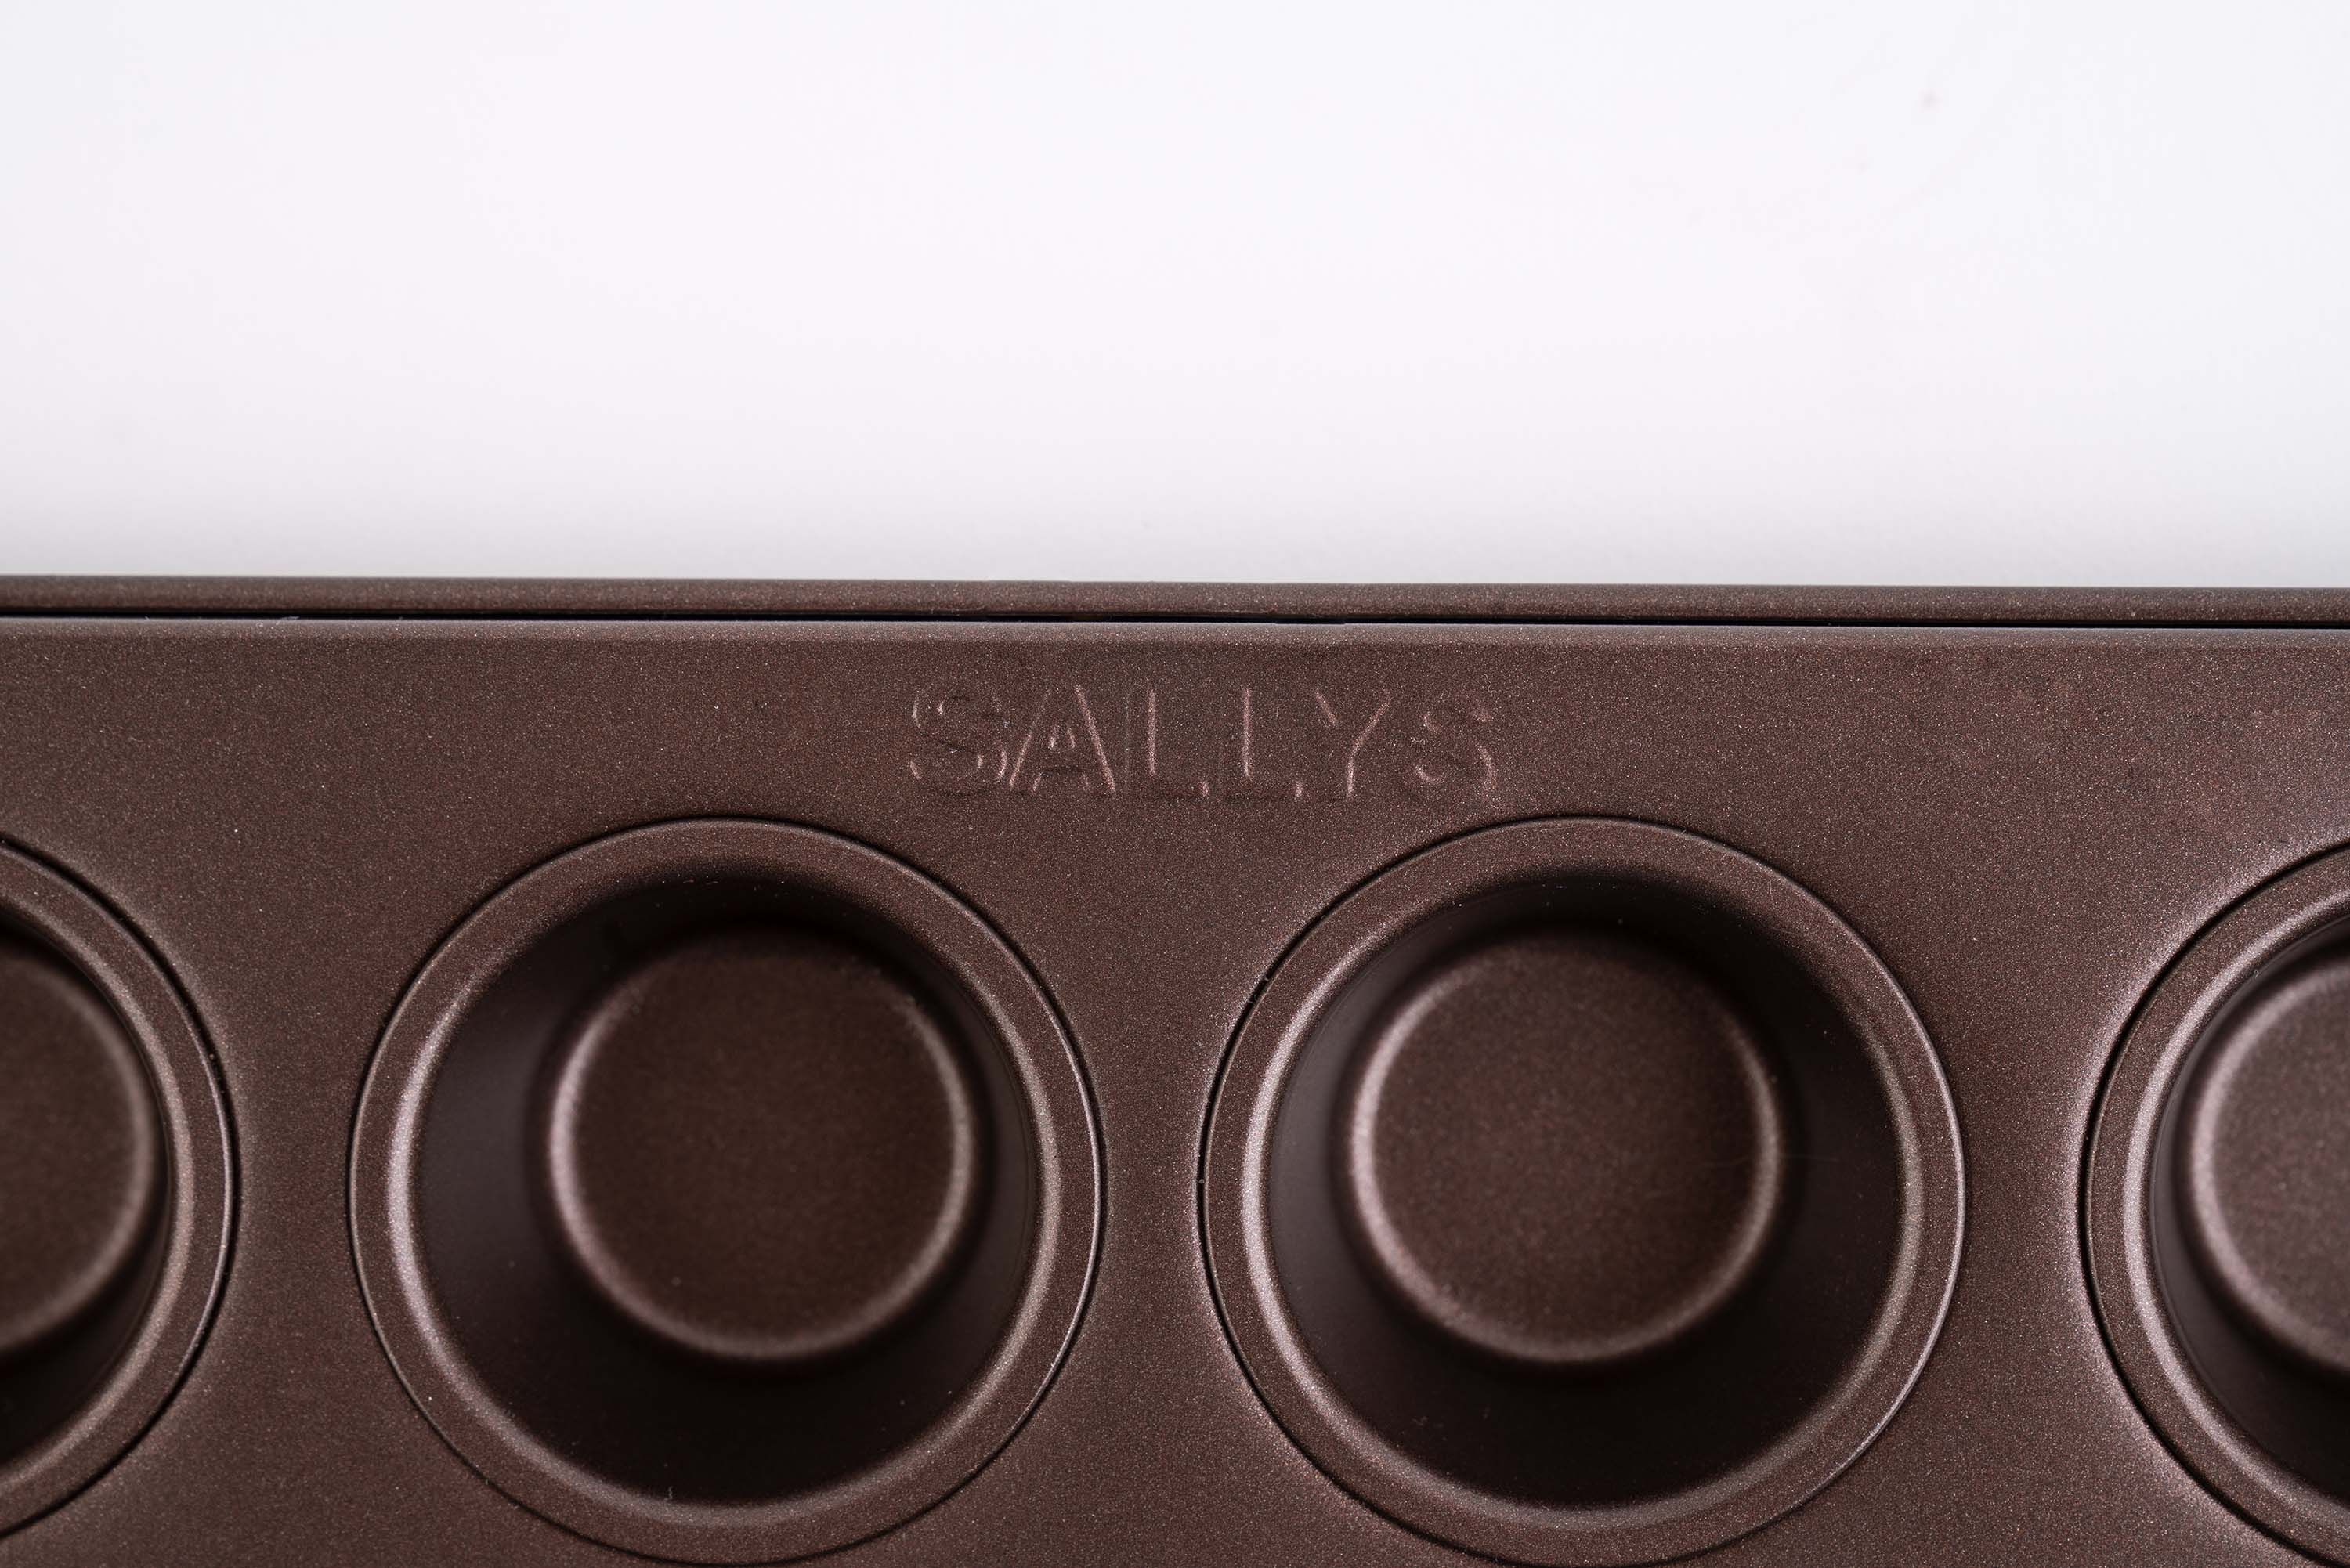 Das Sallys Logo auf der Muffinform